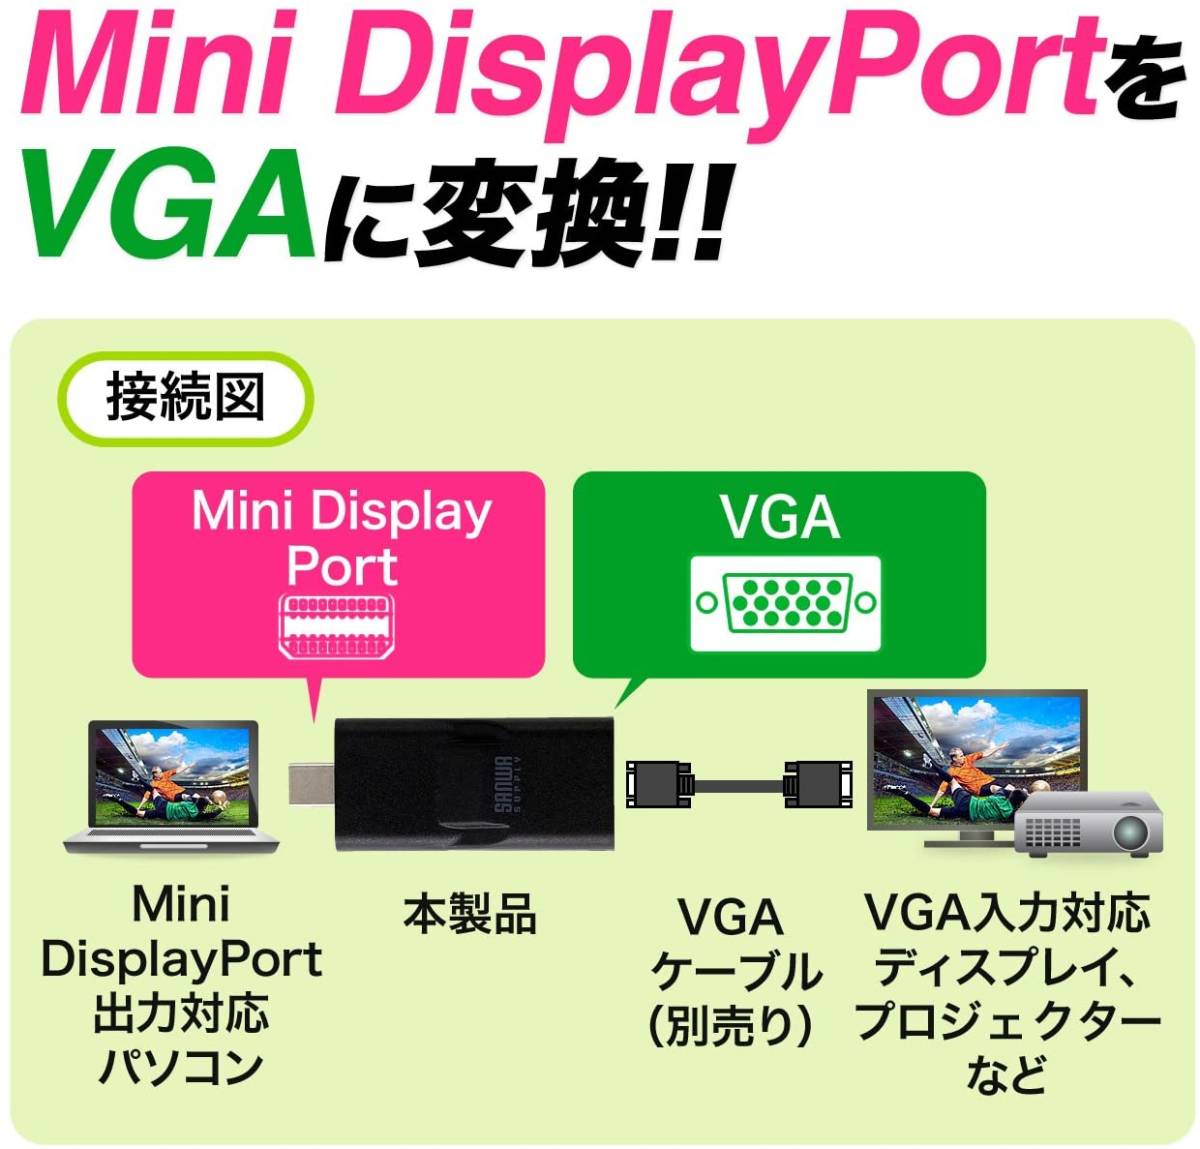 サンワダイレクト Mini DisplayPort - VGA 変換アダプター Thunderbolt フルHD 対応 Macbook Pro/Surface Pro4 対応 500-KC012MDV